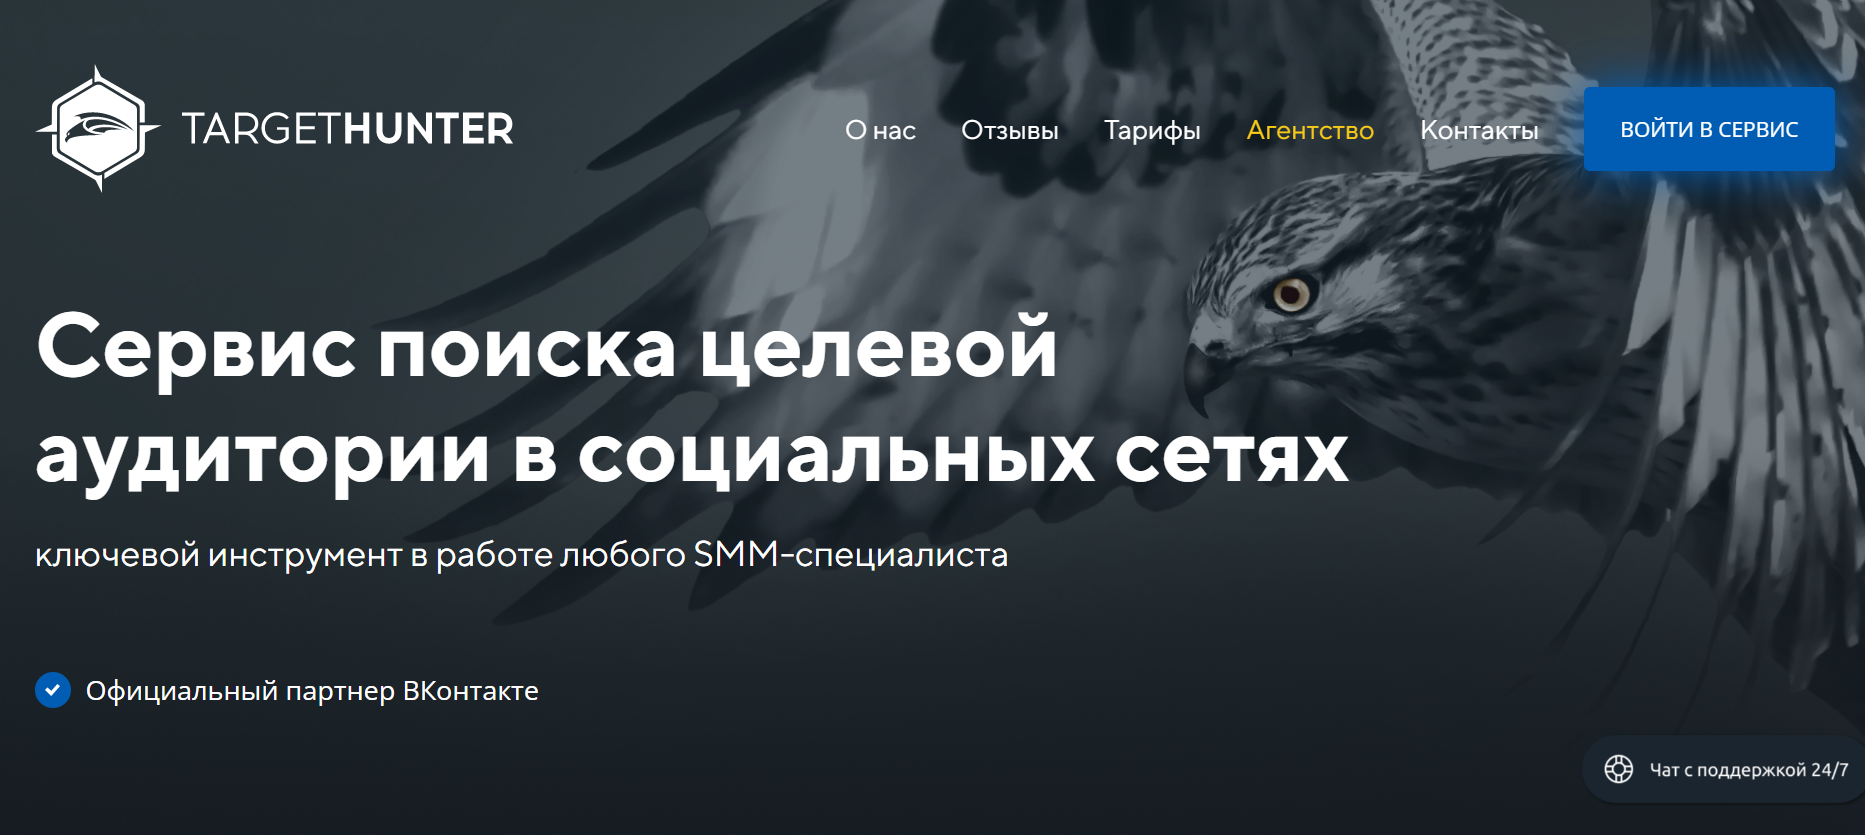 TargetHunter для рекламы во ВКонтакте: обзор сервиса и схема сбора аудитории